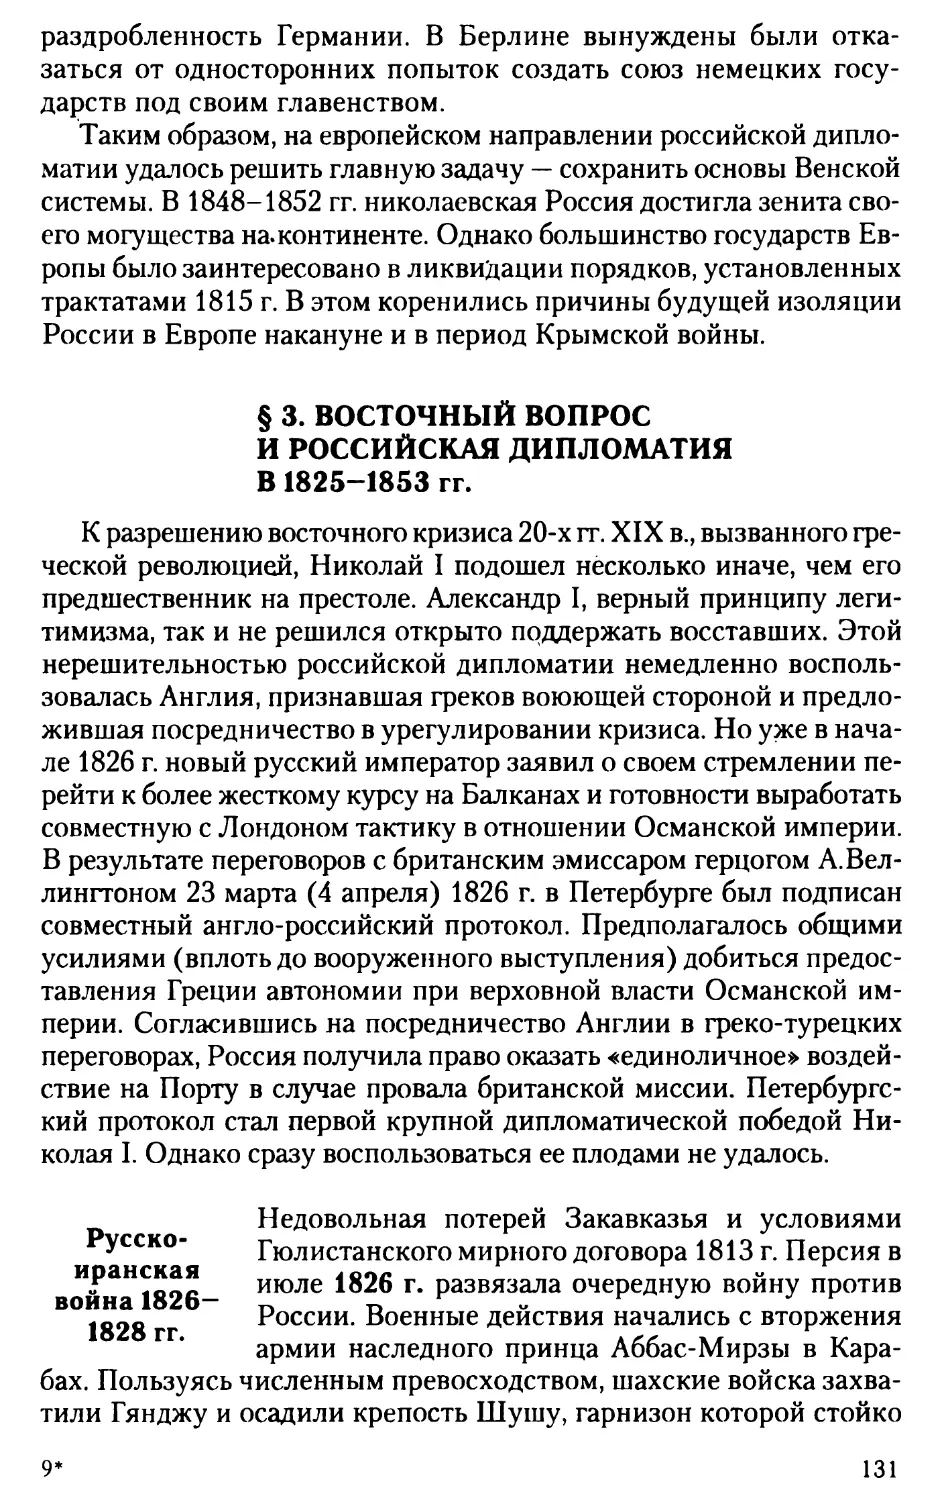 § 3. Восточный вопрос и российская дипломатия в 1825-1853 гг